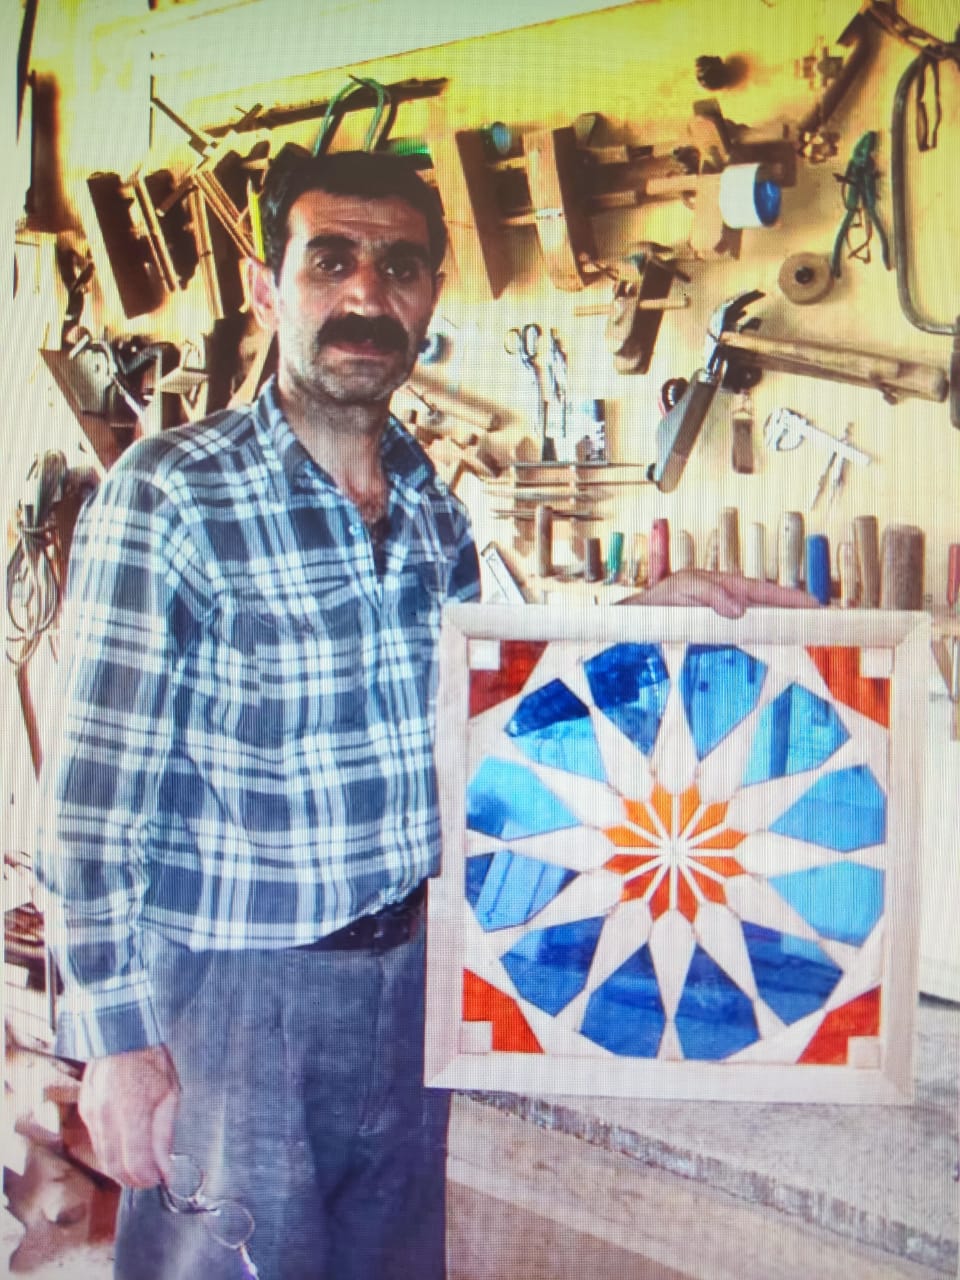 اعطای درجه هنری به استاد مصنوعات چوبی در همدان